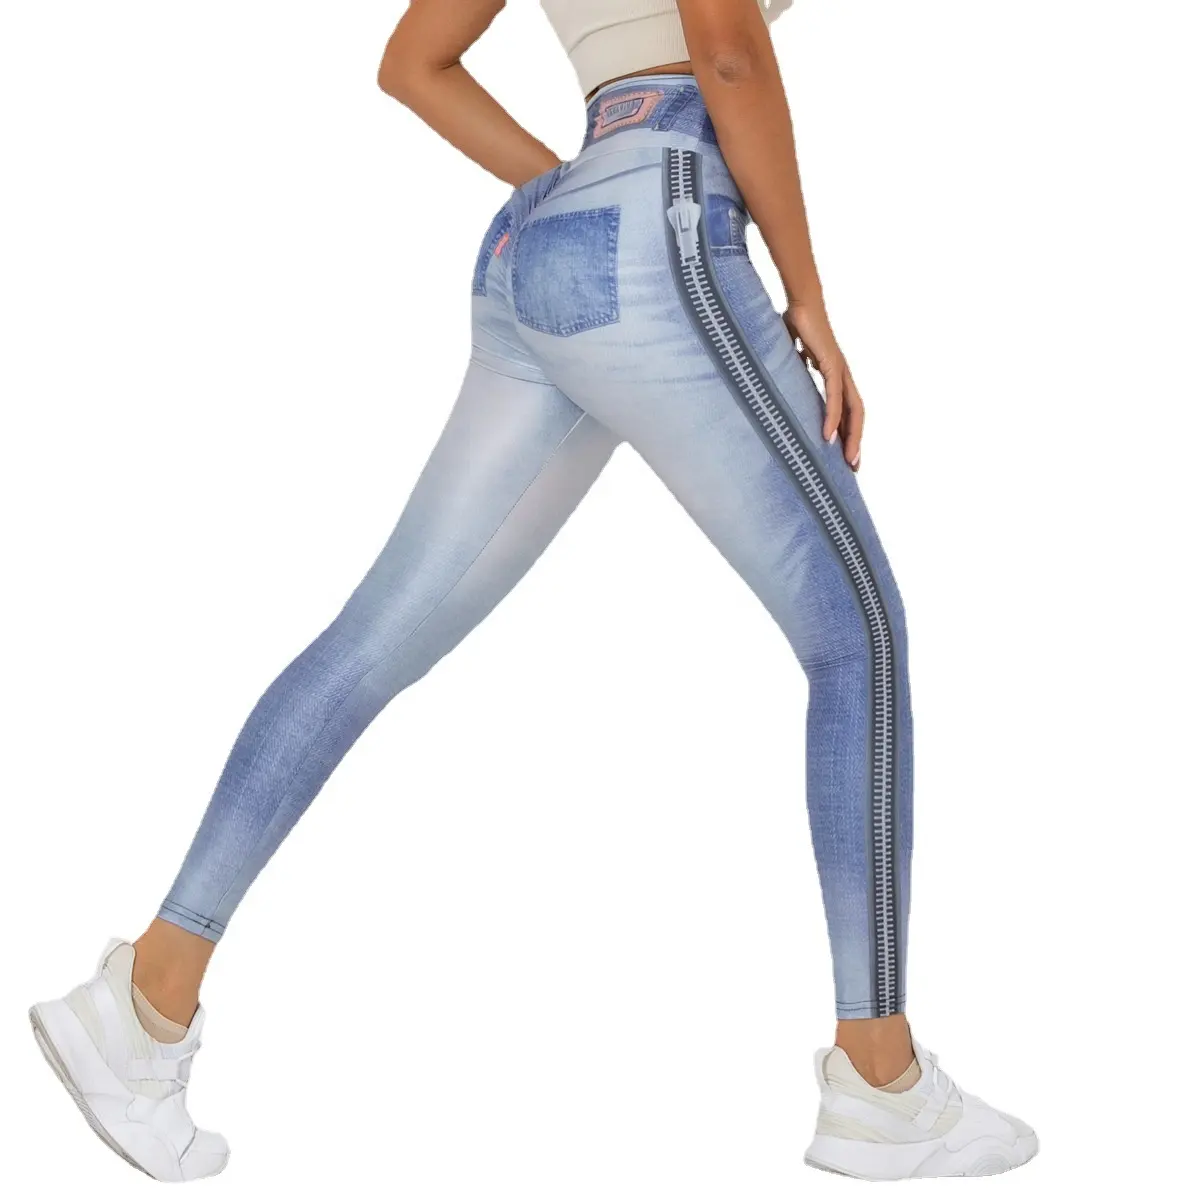 الرقمية الطباعة الدنيم الأزرق سراويل رياضية عالية مرونة اليوغا طماق النساء ملابس رياضية